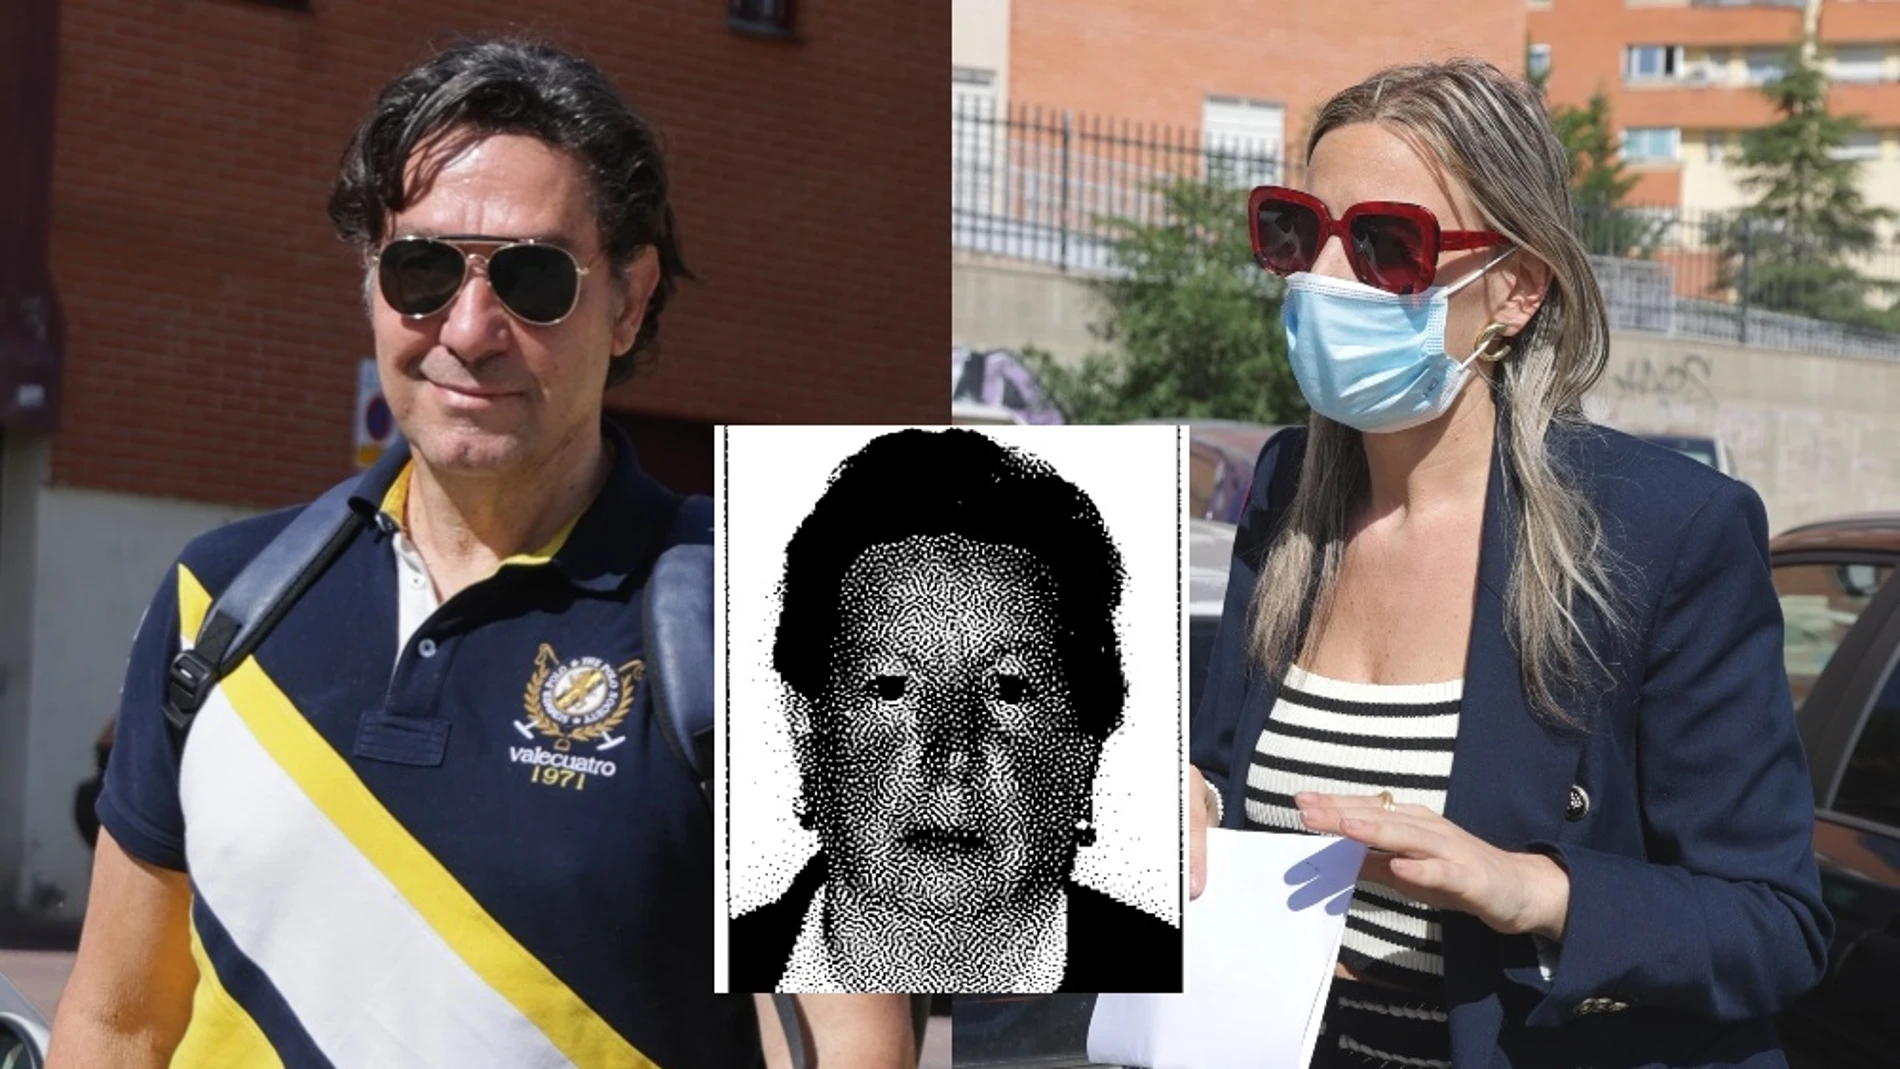 Luis Lorenzo y Arancha Palomino, acusados de asesinar a su tía Isabel